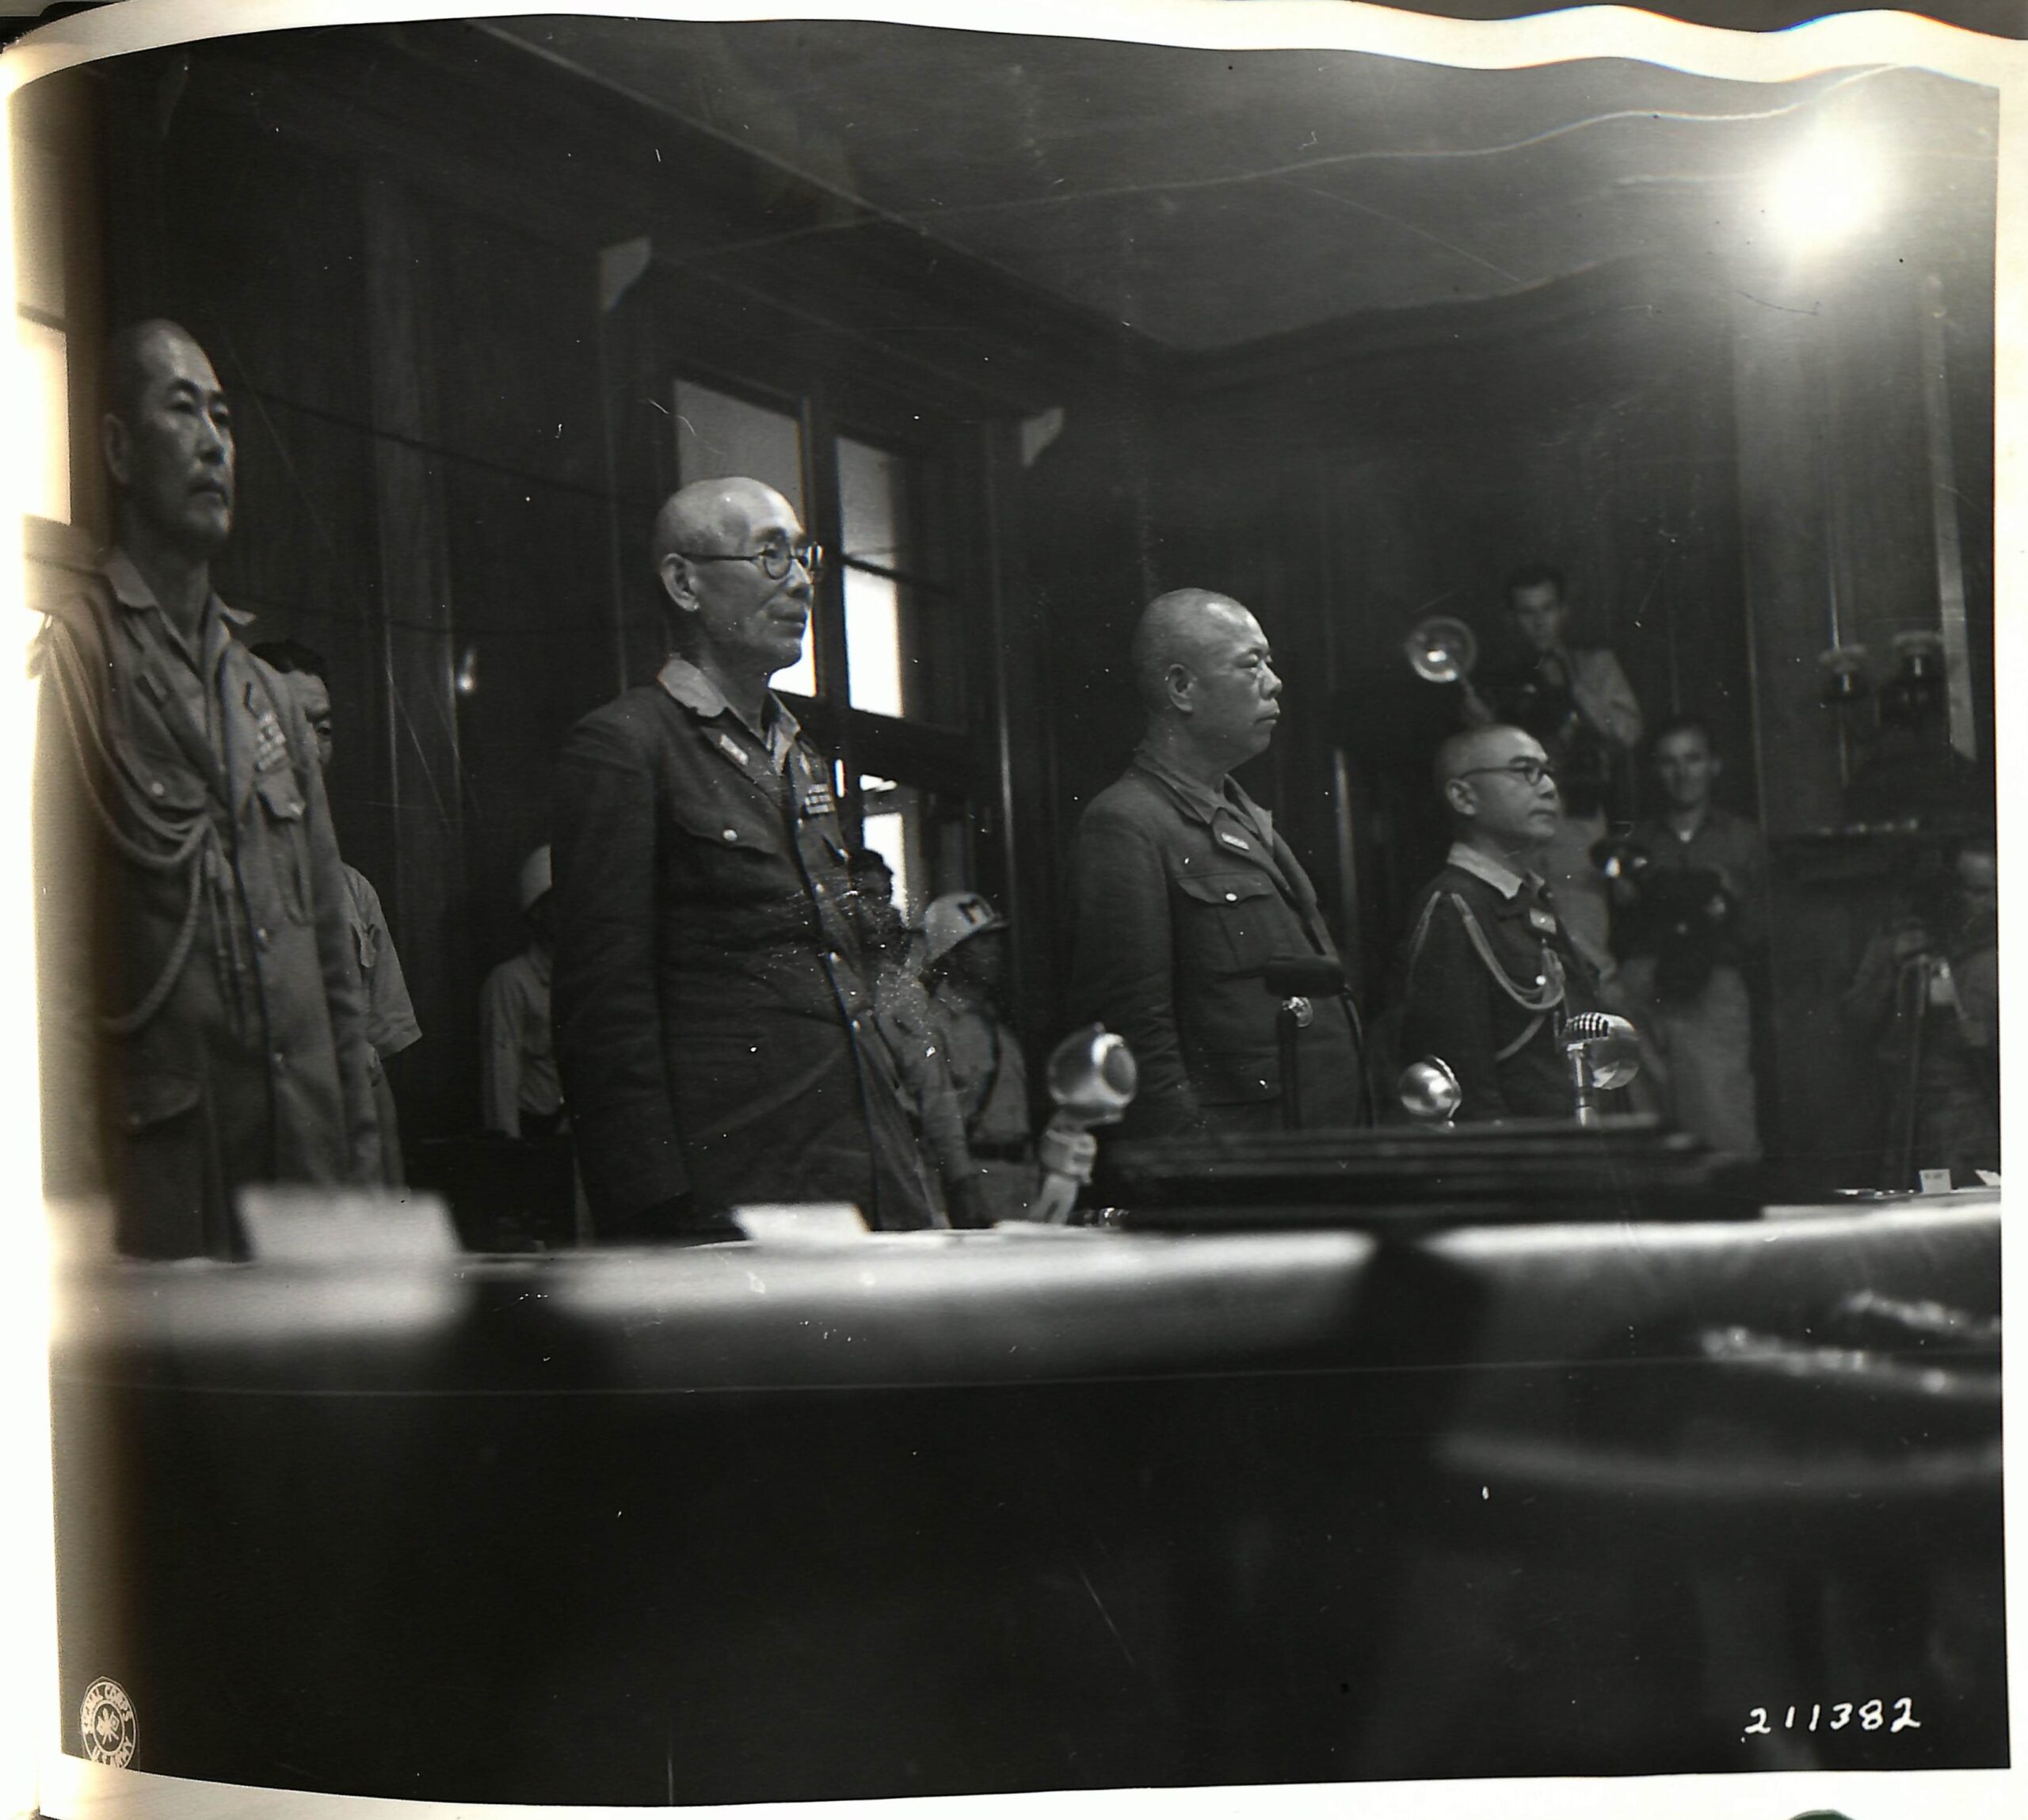 Japanese general surrenders